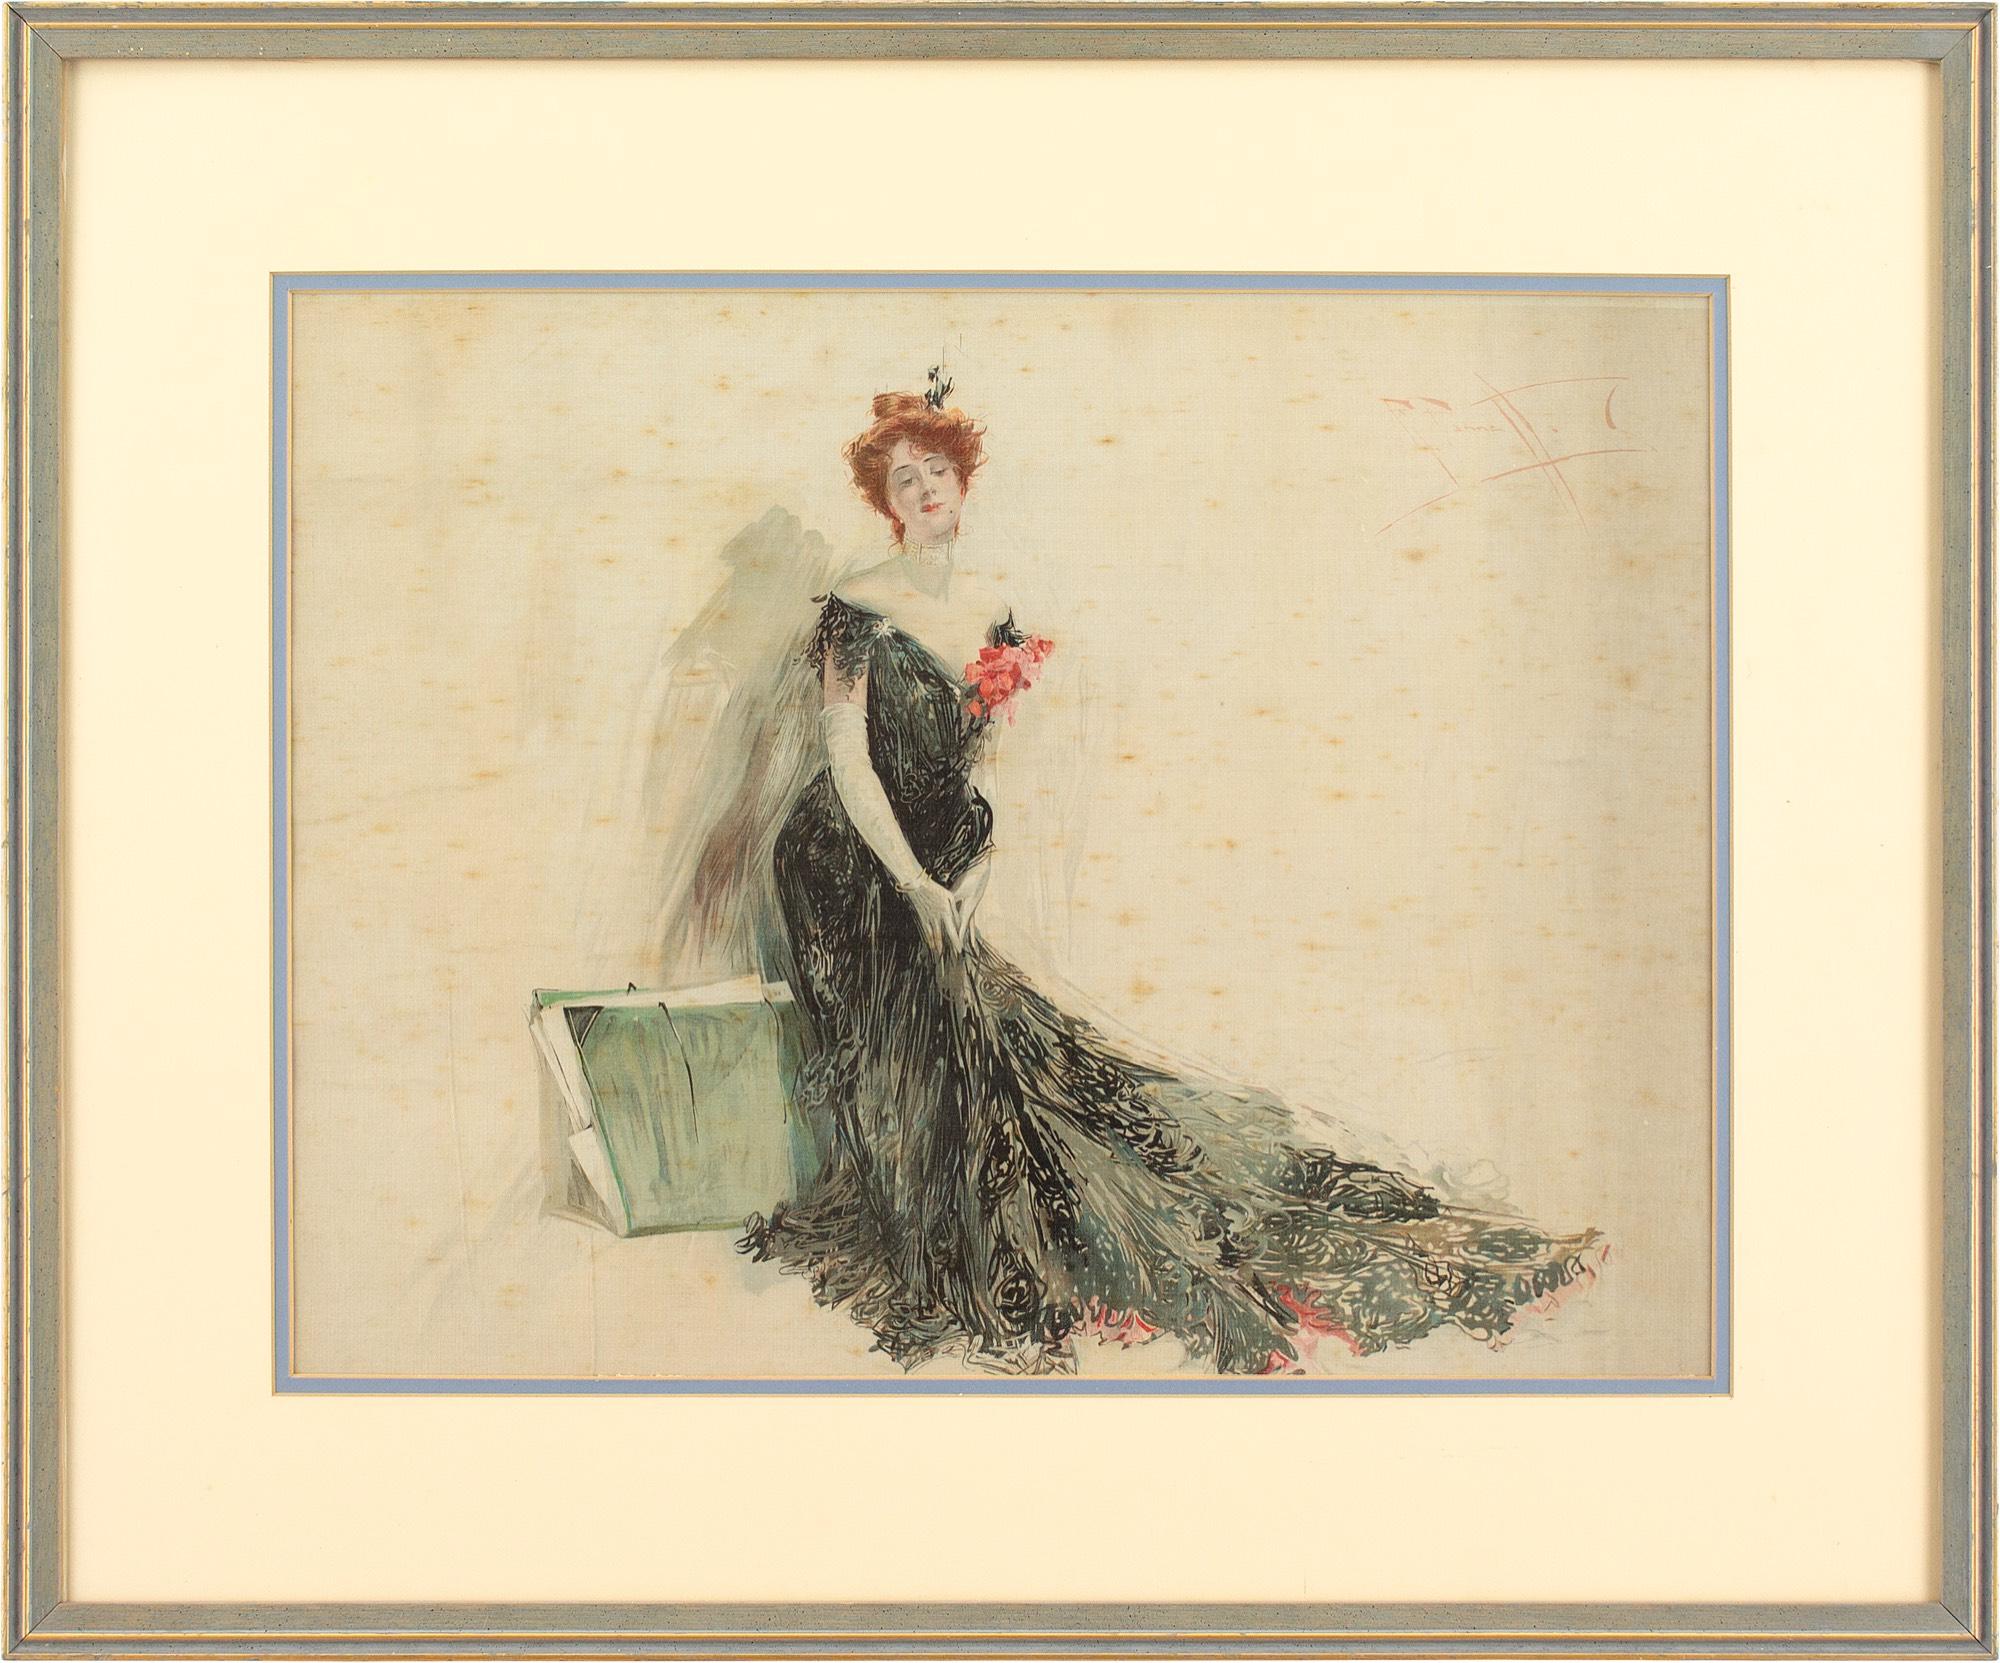 Dieses Aquarell und Gouache des britischen Künstlers Reginald Pannett (1875-1924) aus dem frühen 20. Jahrhundert zeigt eine edwardianische Dame in einem prächtigen schwarzen Kleid und weißen Handschuhen.

Pannett tauchte von klein auf in die